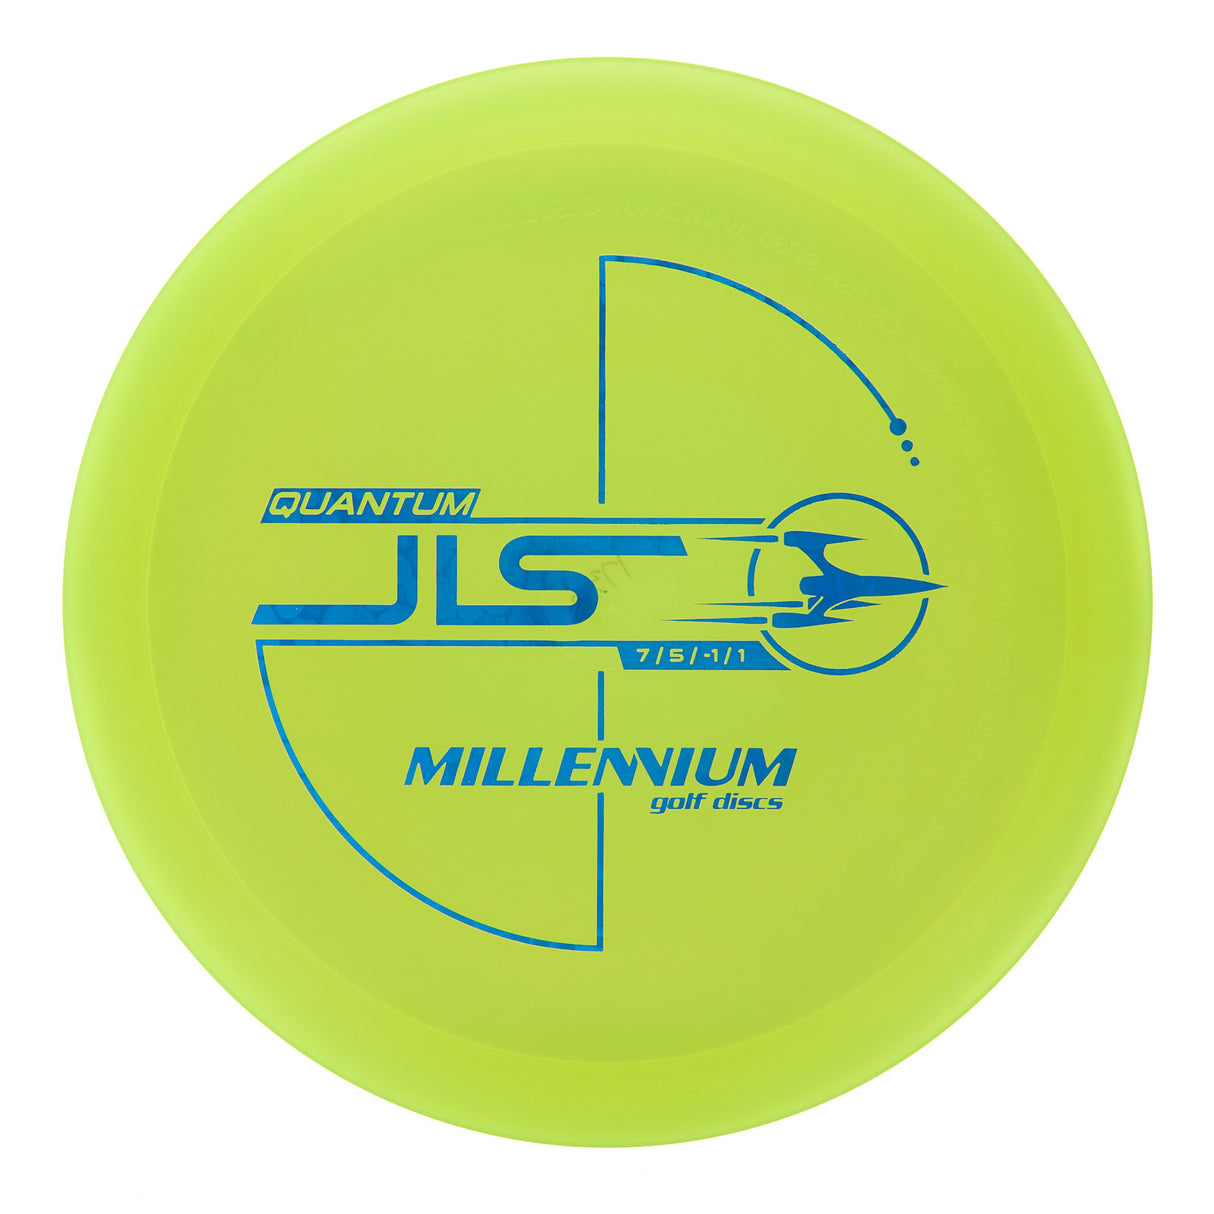 Millennium JLS - Quantum  176g | Style 0001